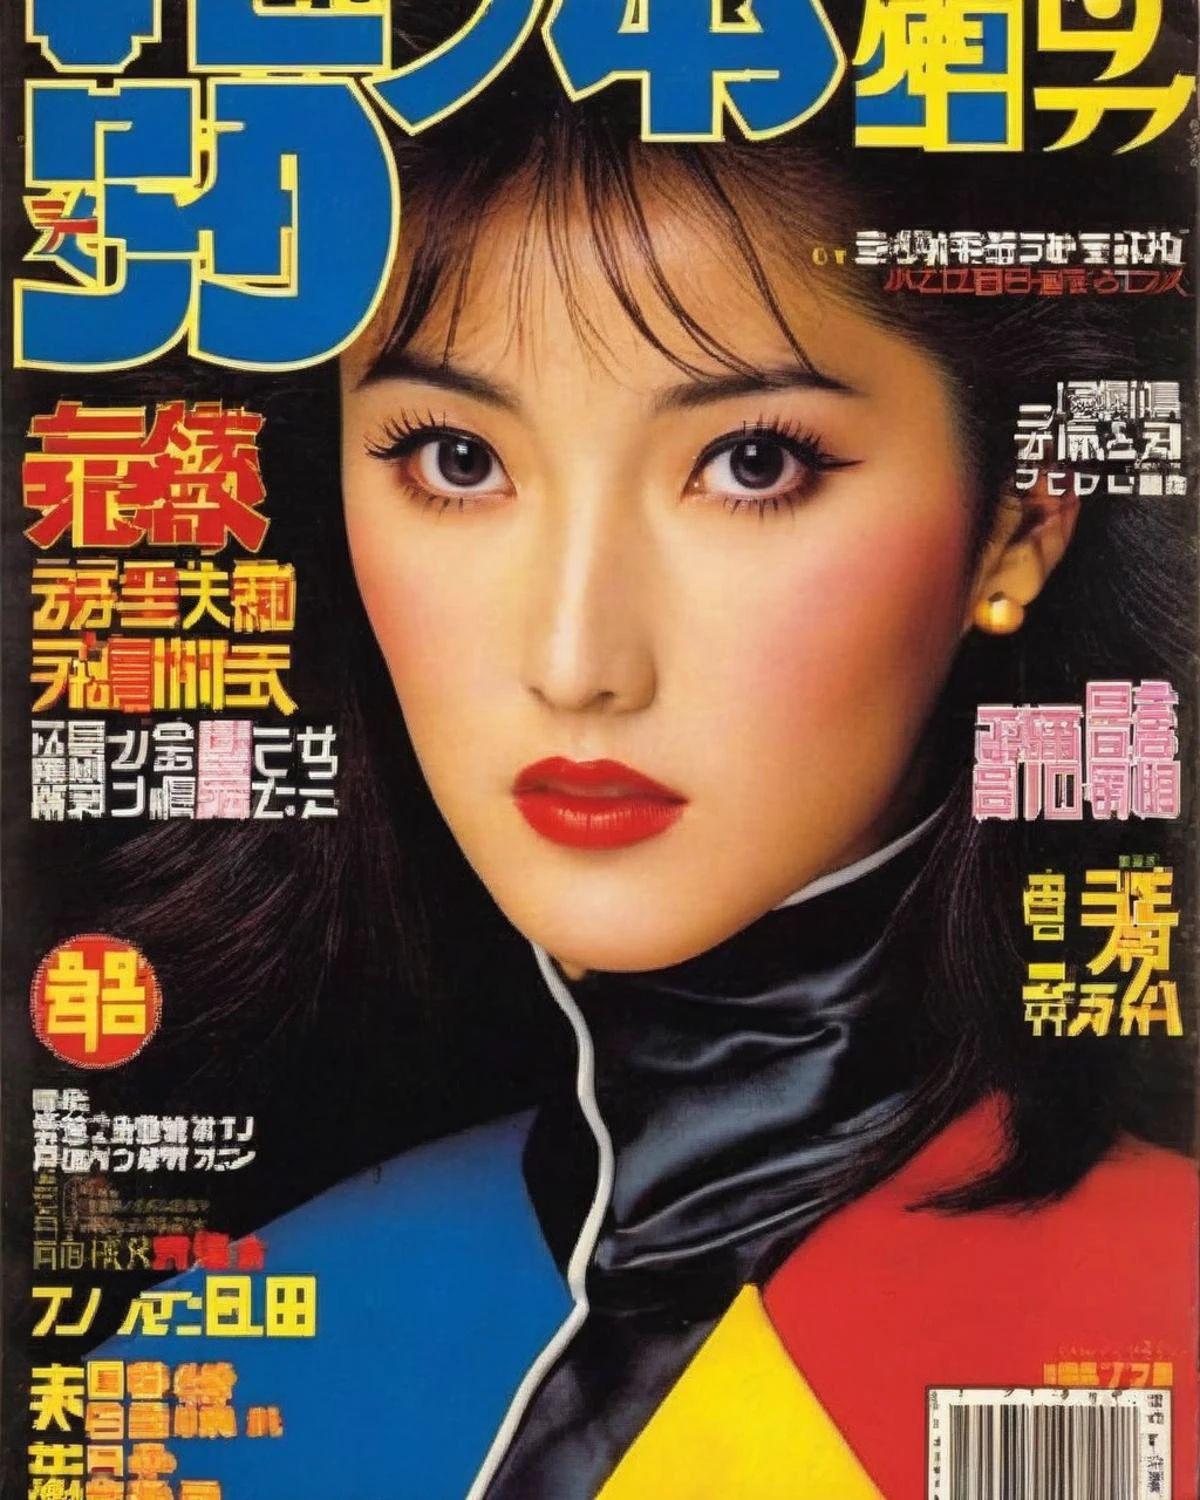 ปกนิตยสารญี่ปุ่นยุค 80 , ย้อนยุค_นิตยสาร , 